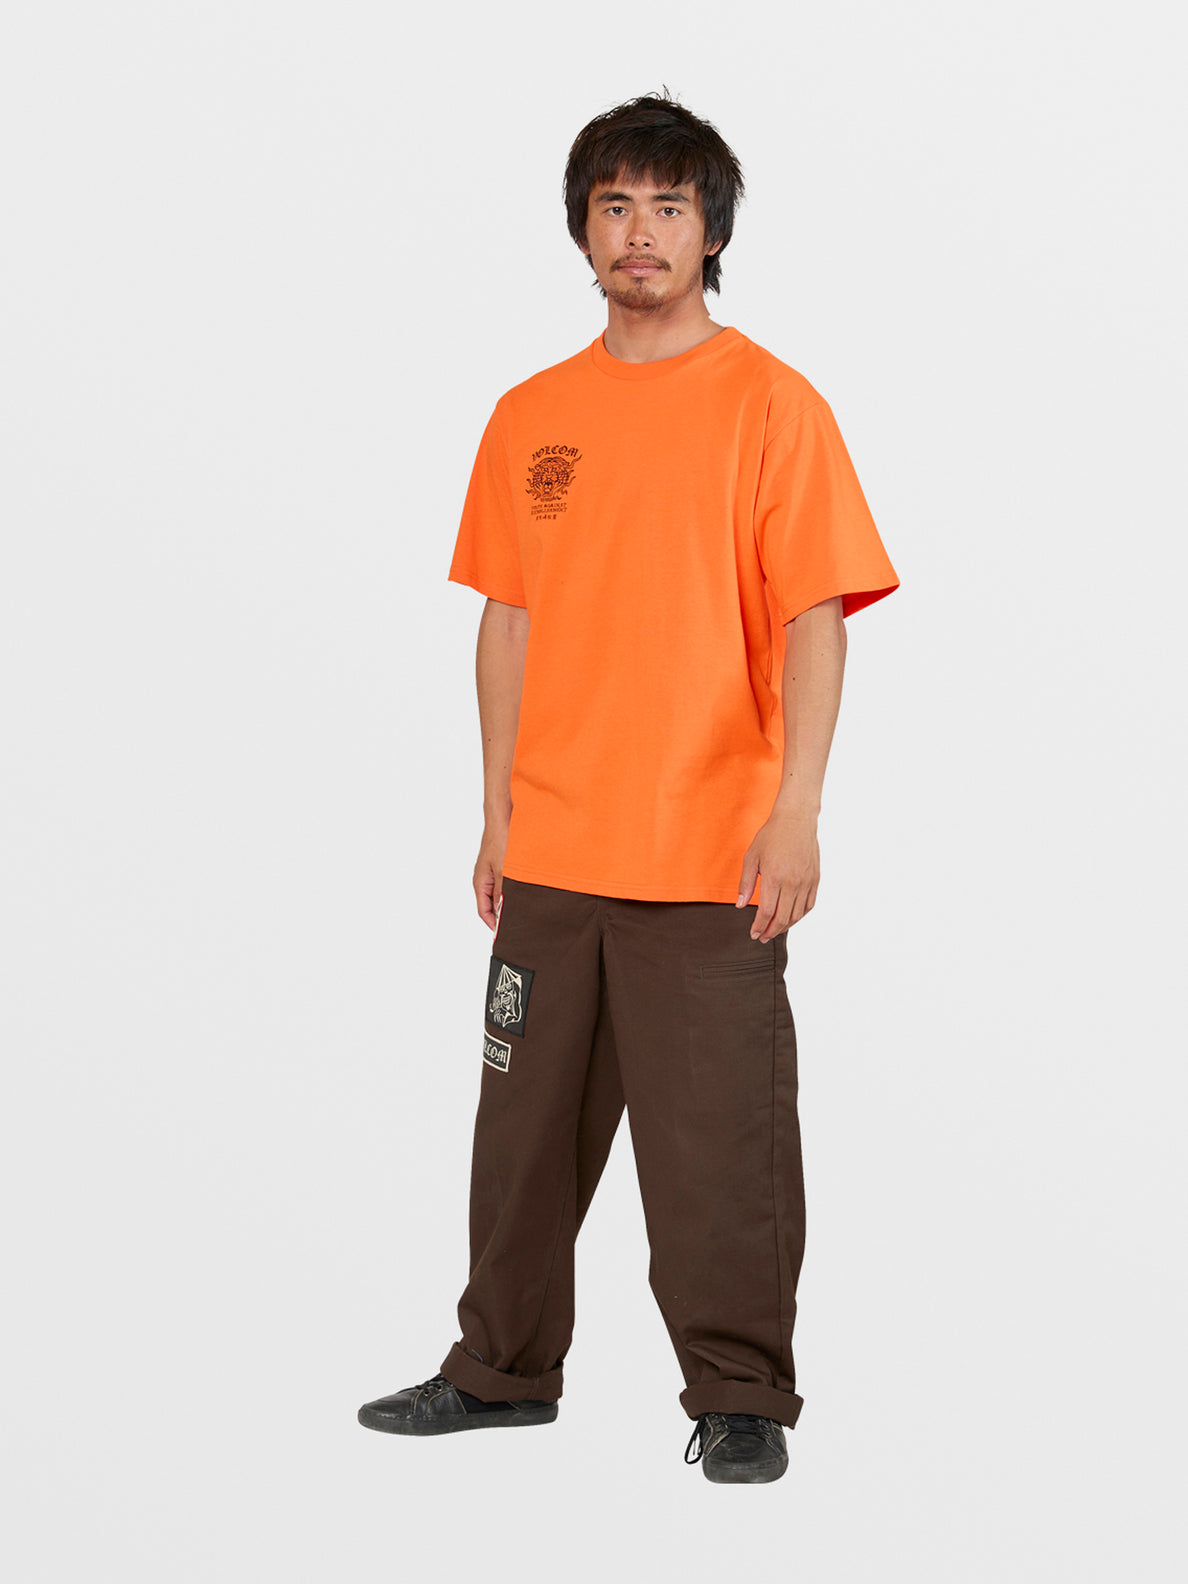 Tokyo True Featured Artist Yusuke Services Pants - Dark Brown